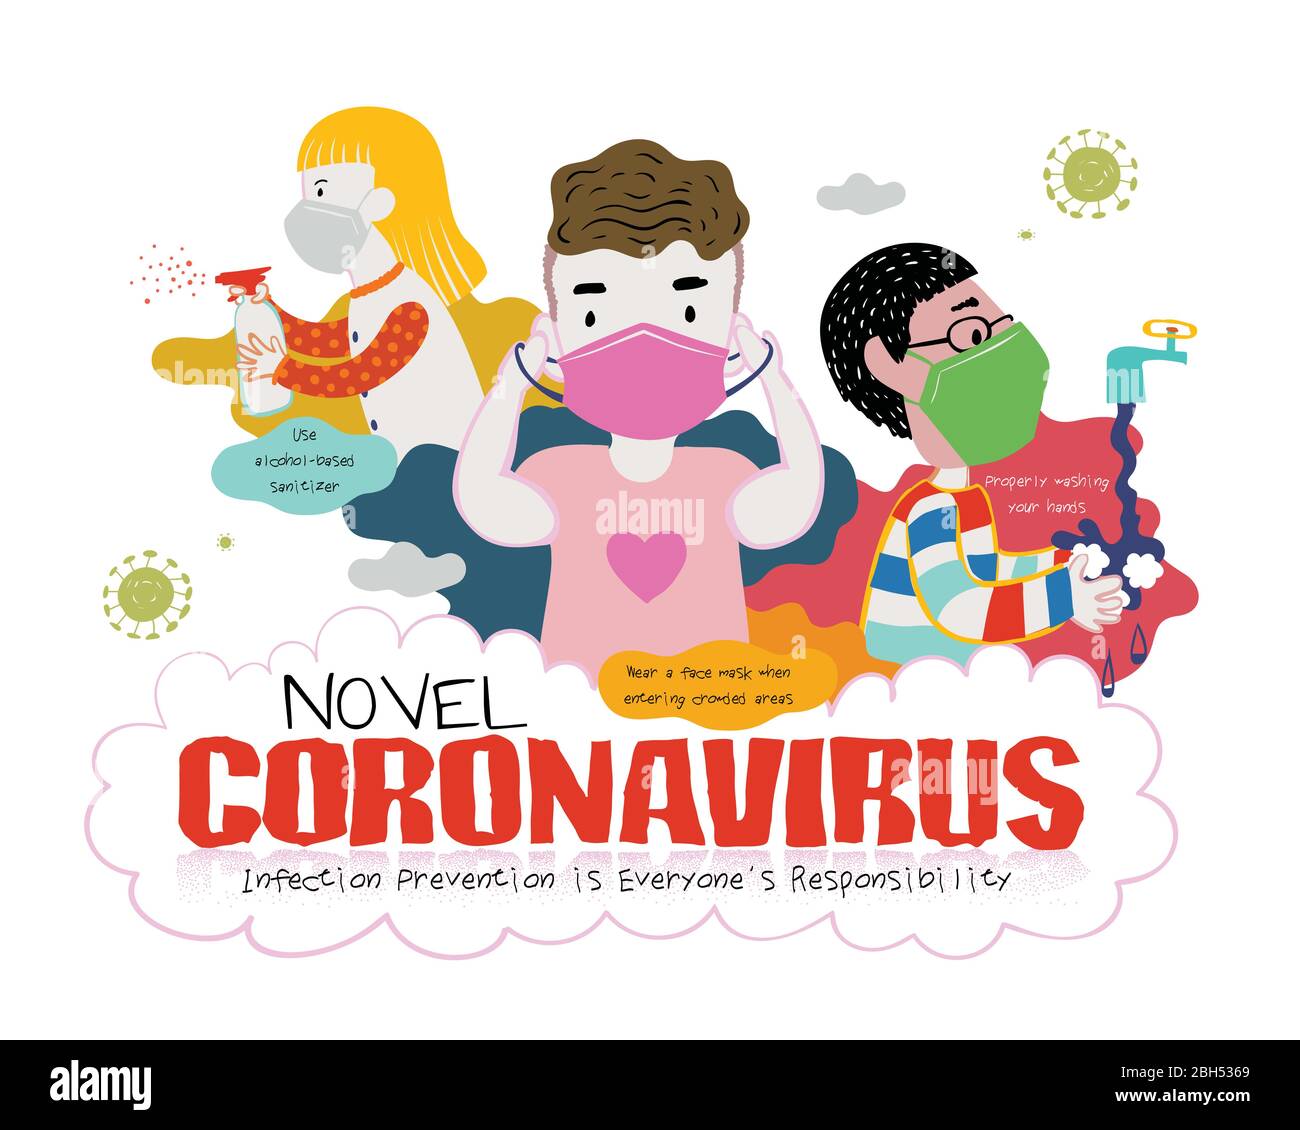 Les meilleures façons de combattre le coronavirus de Novel, y compris de se laver les mains, de mettre sur le masque et d'utiliser un spray désinfectant, illustration de promotion de la santé pour COVID-19 dans le doiche Illustration de Vecteur